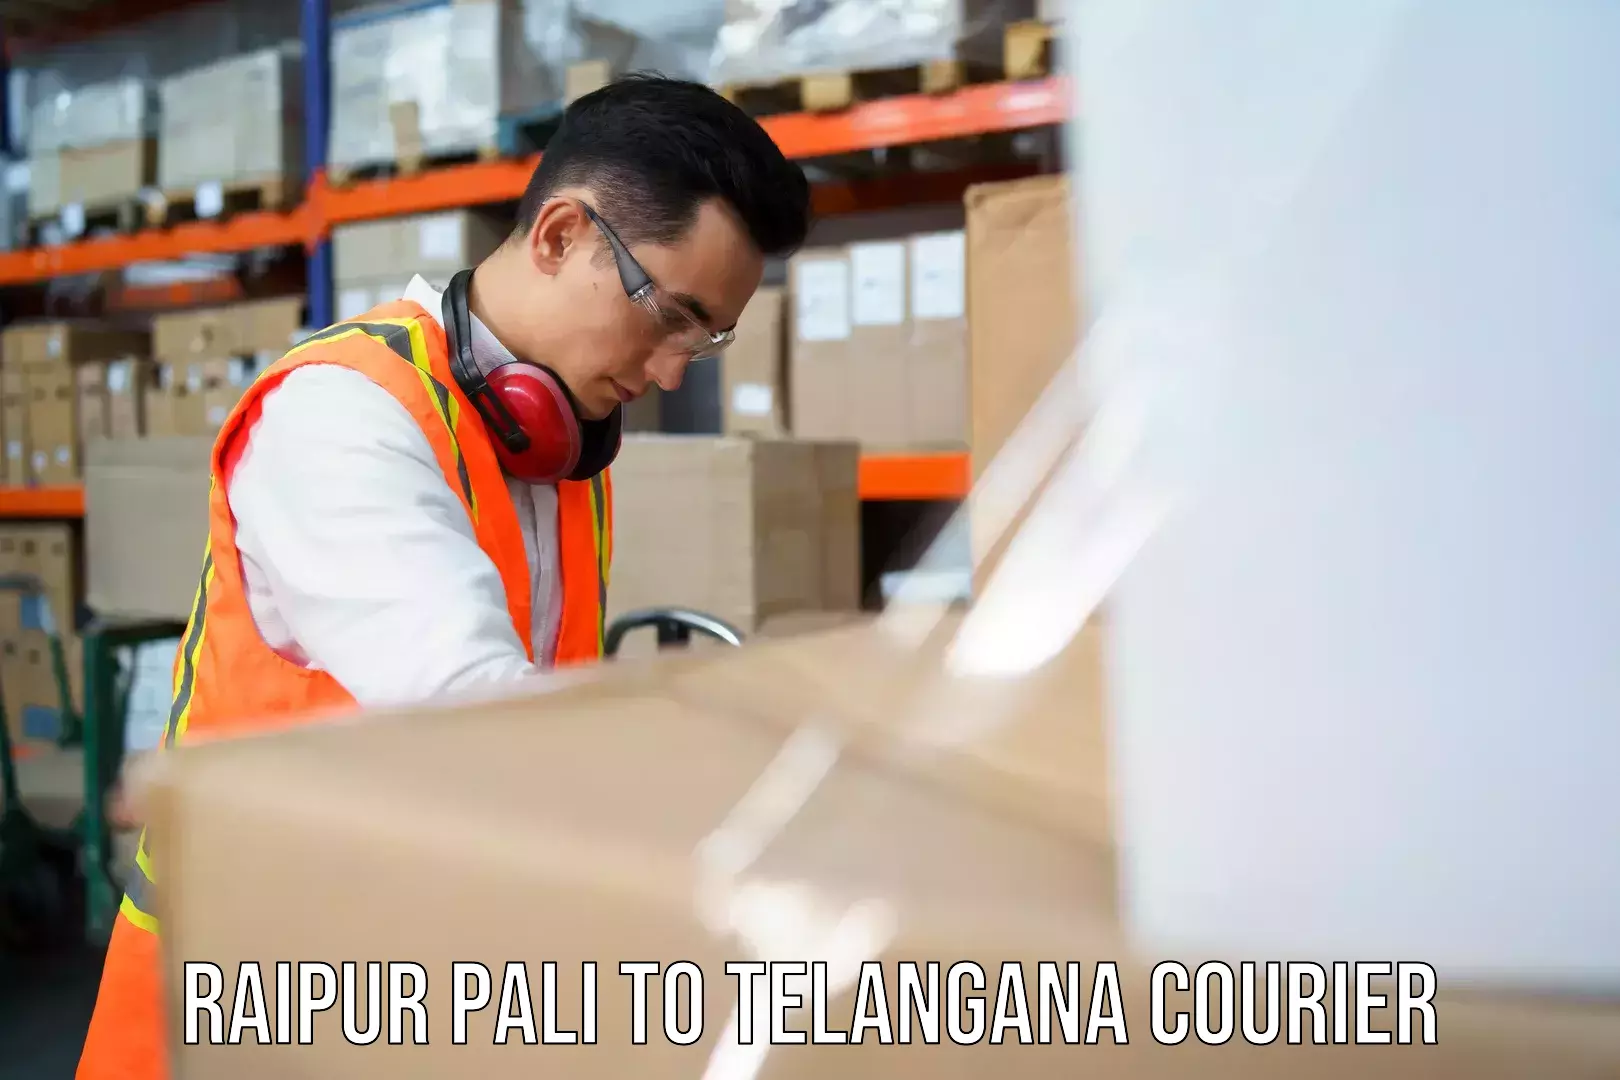 Versatile courier offerings Raipur Pali to Eligedu